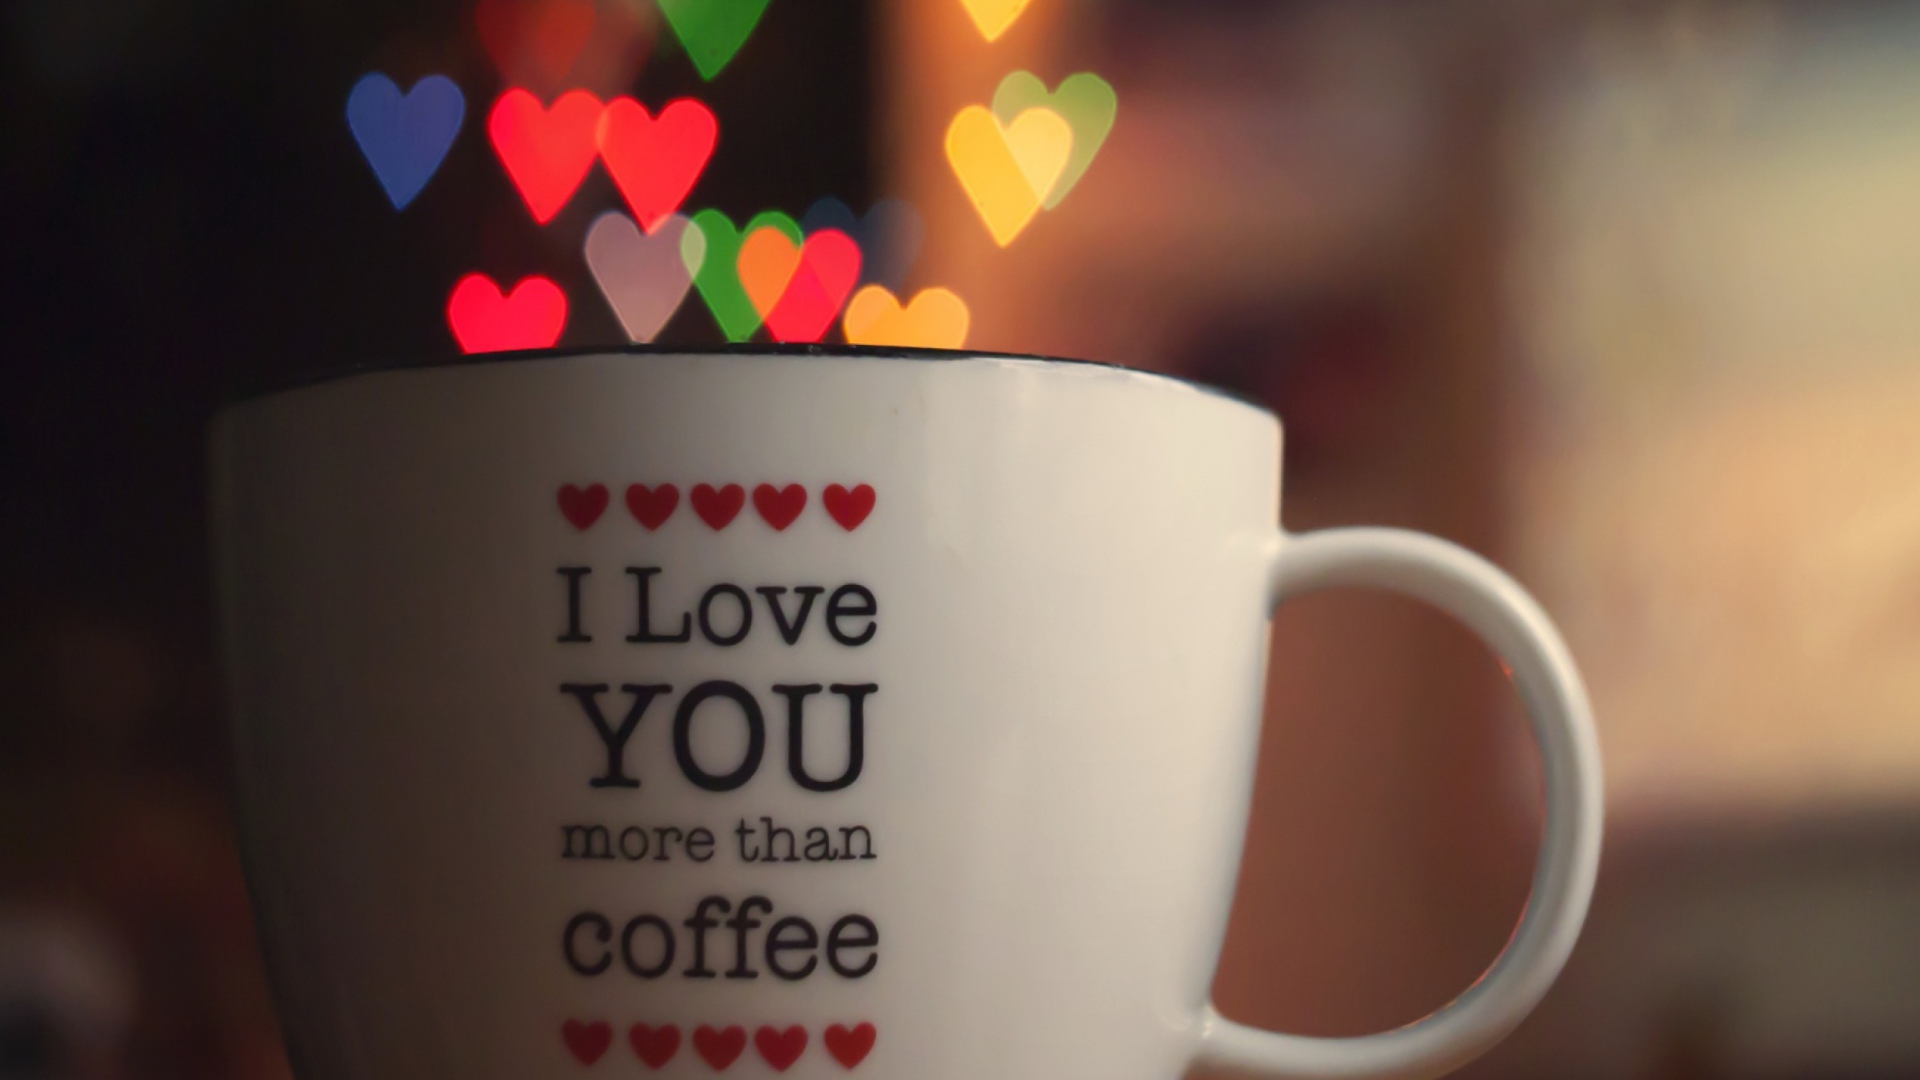 I Love You More Than Coffee screenshot #1 1920x1080